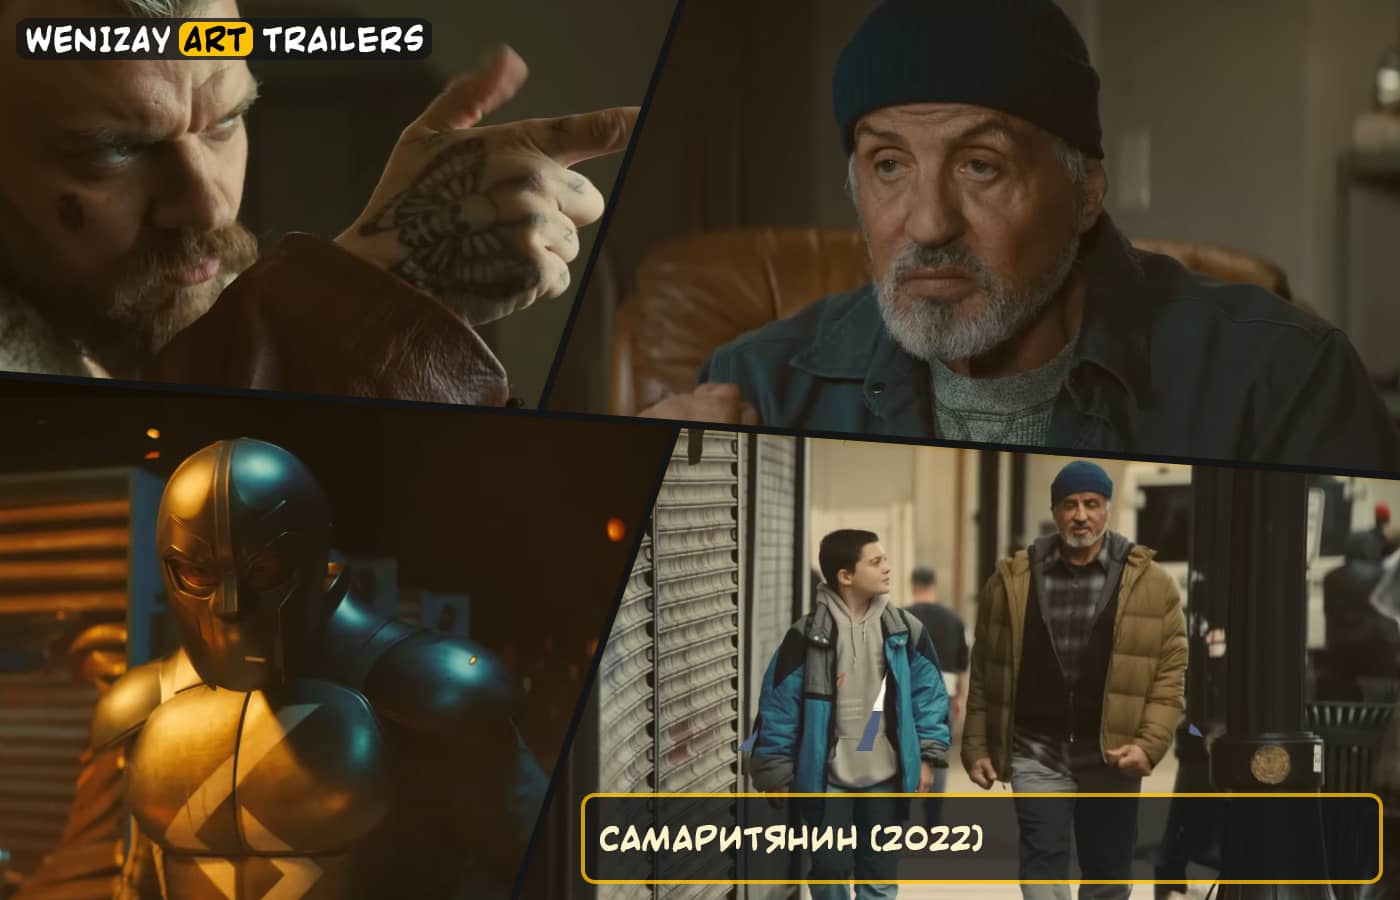 Самаритянин, Самаритянин 2022, фильм Самаритянин 2022